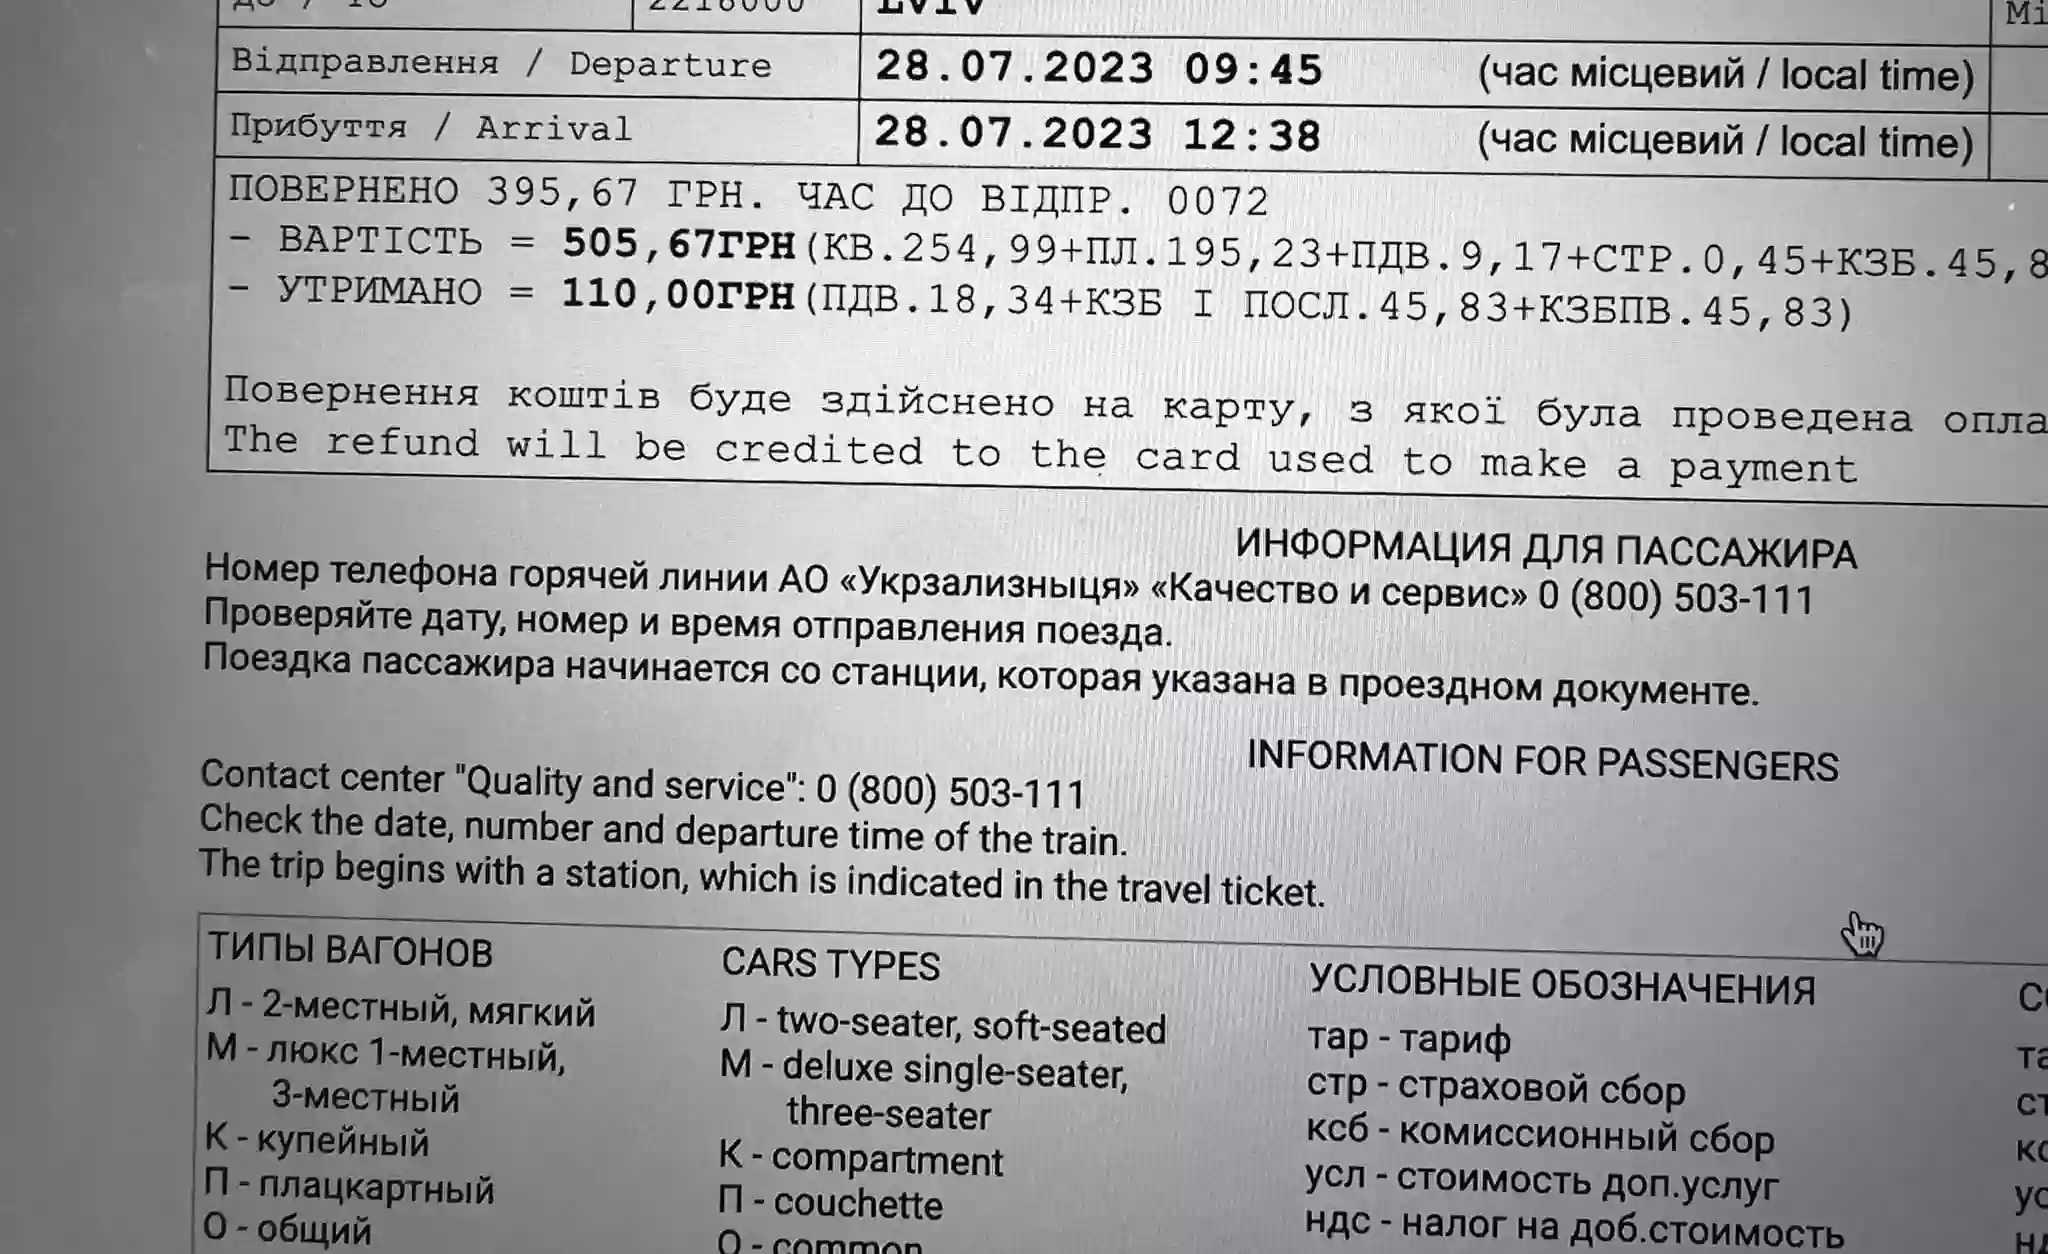 Російська замість української на міжнародних квитках: «Укрзалізниця» відреагувала, омбудсман почав перевірку